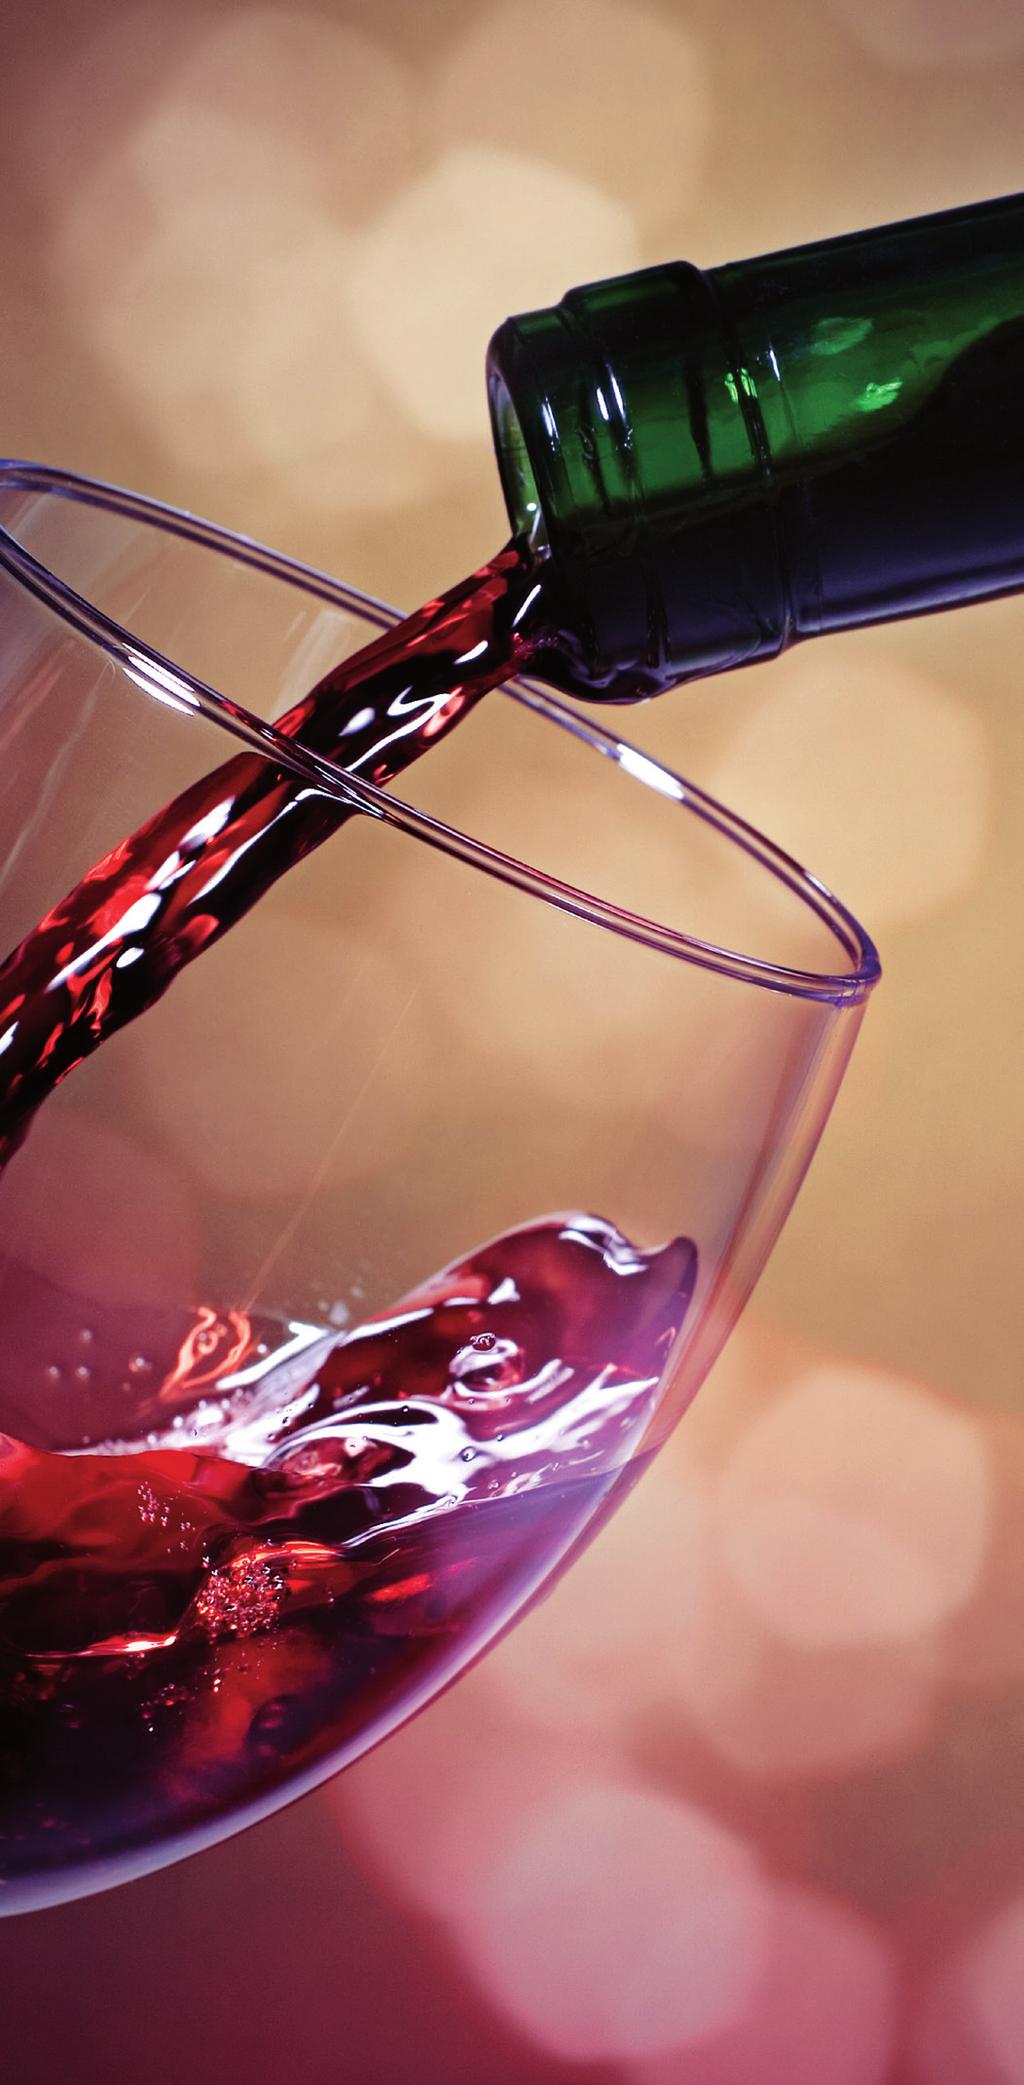 Beste wijnliefhebber, Red Tree Zinfandel De Red Tree wijnen zijn volle en fruitige wijnen waarin de specifieke kenmerken van de druivenrassen goed naar voren komen.